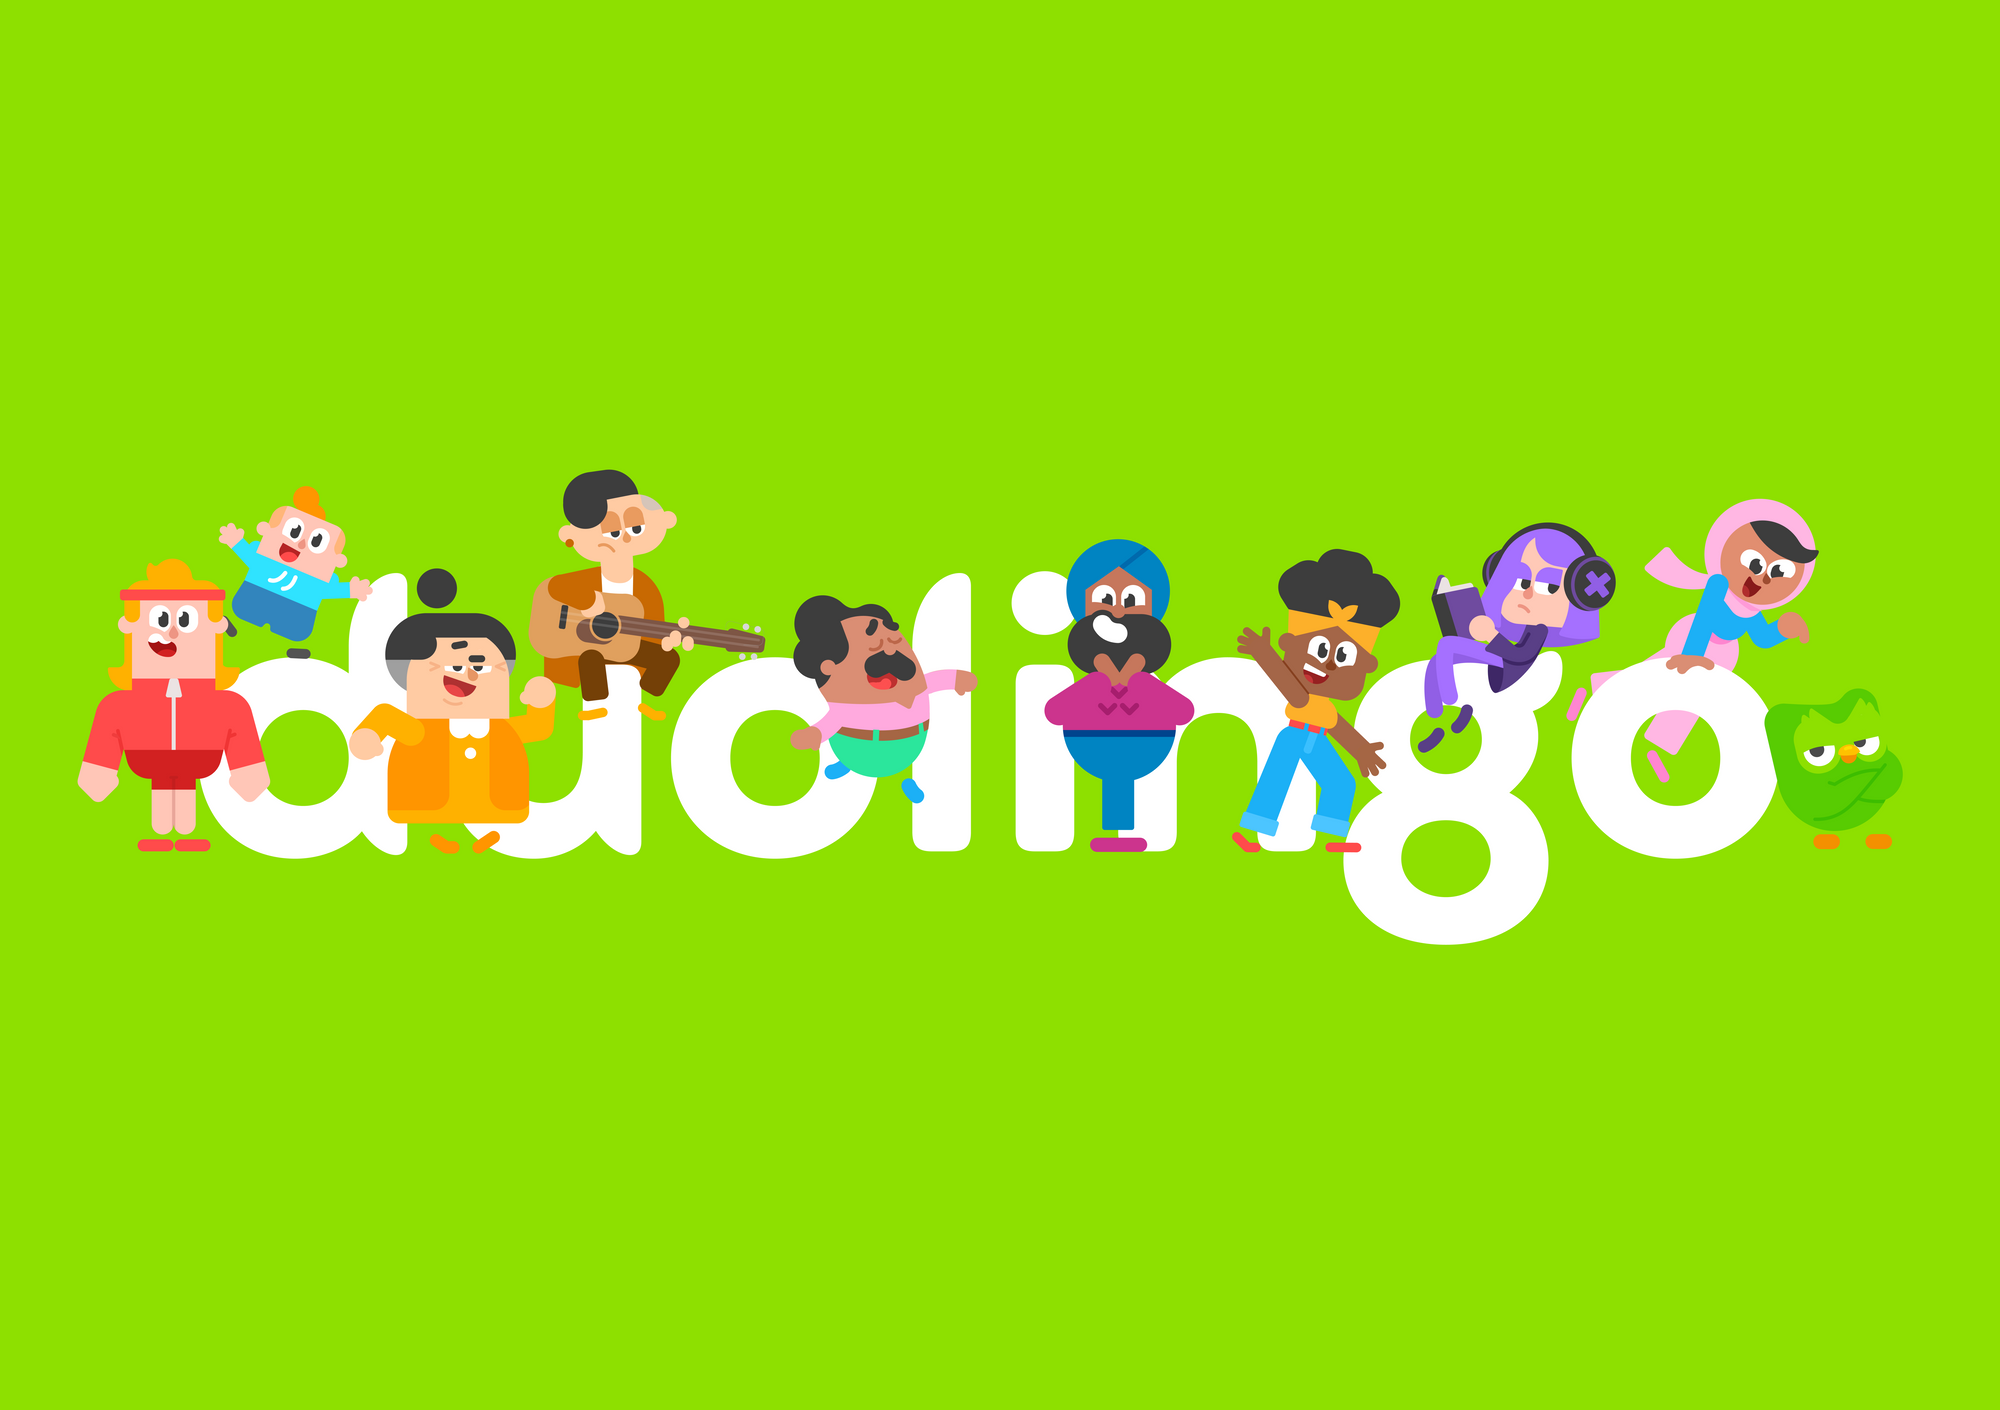 Duolingo nâng cấp mắt khóa học tiếng Anh với những cải tiến dành riêng cho người dùng Việt